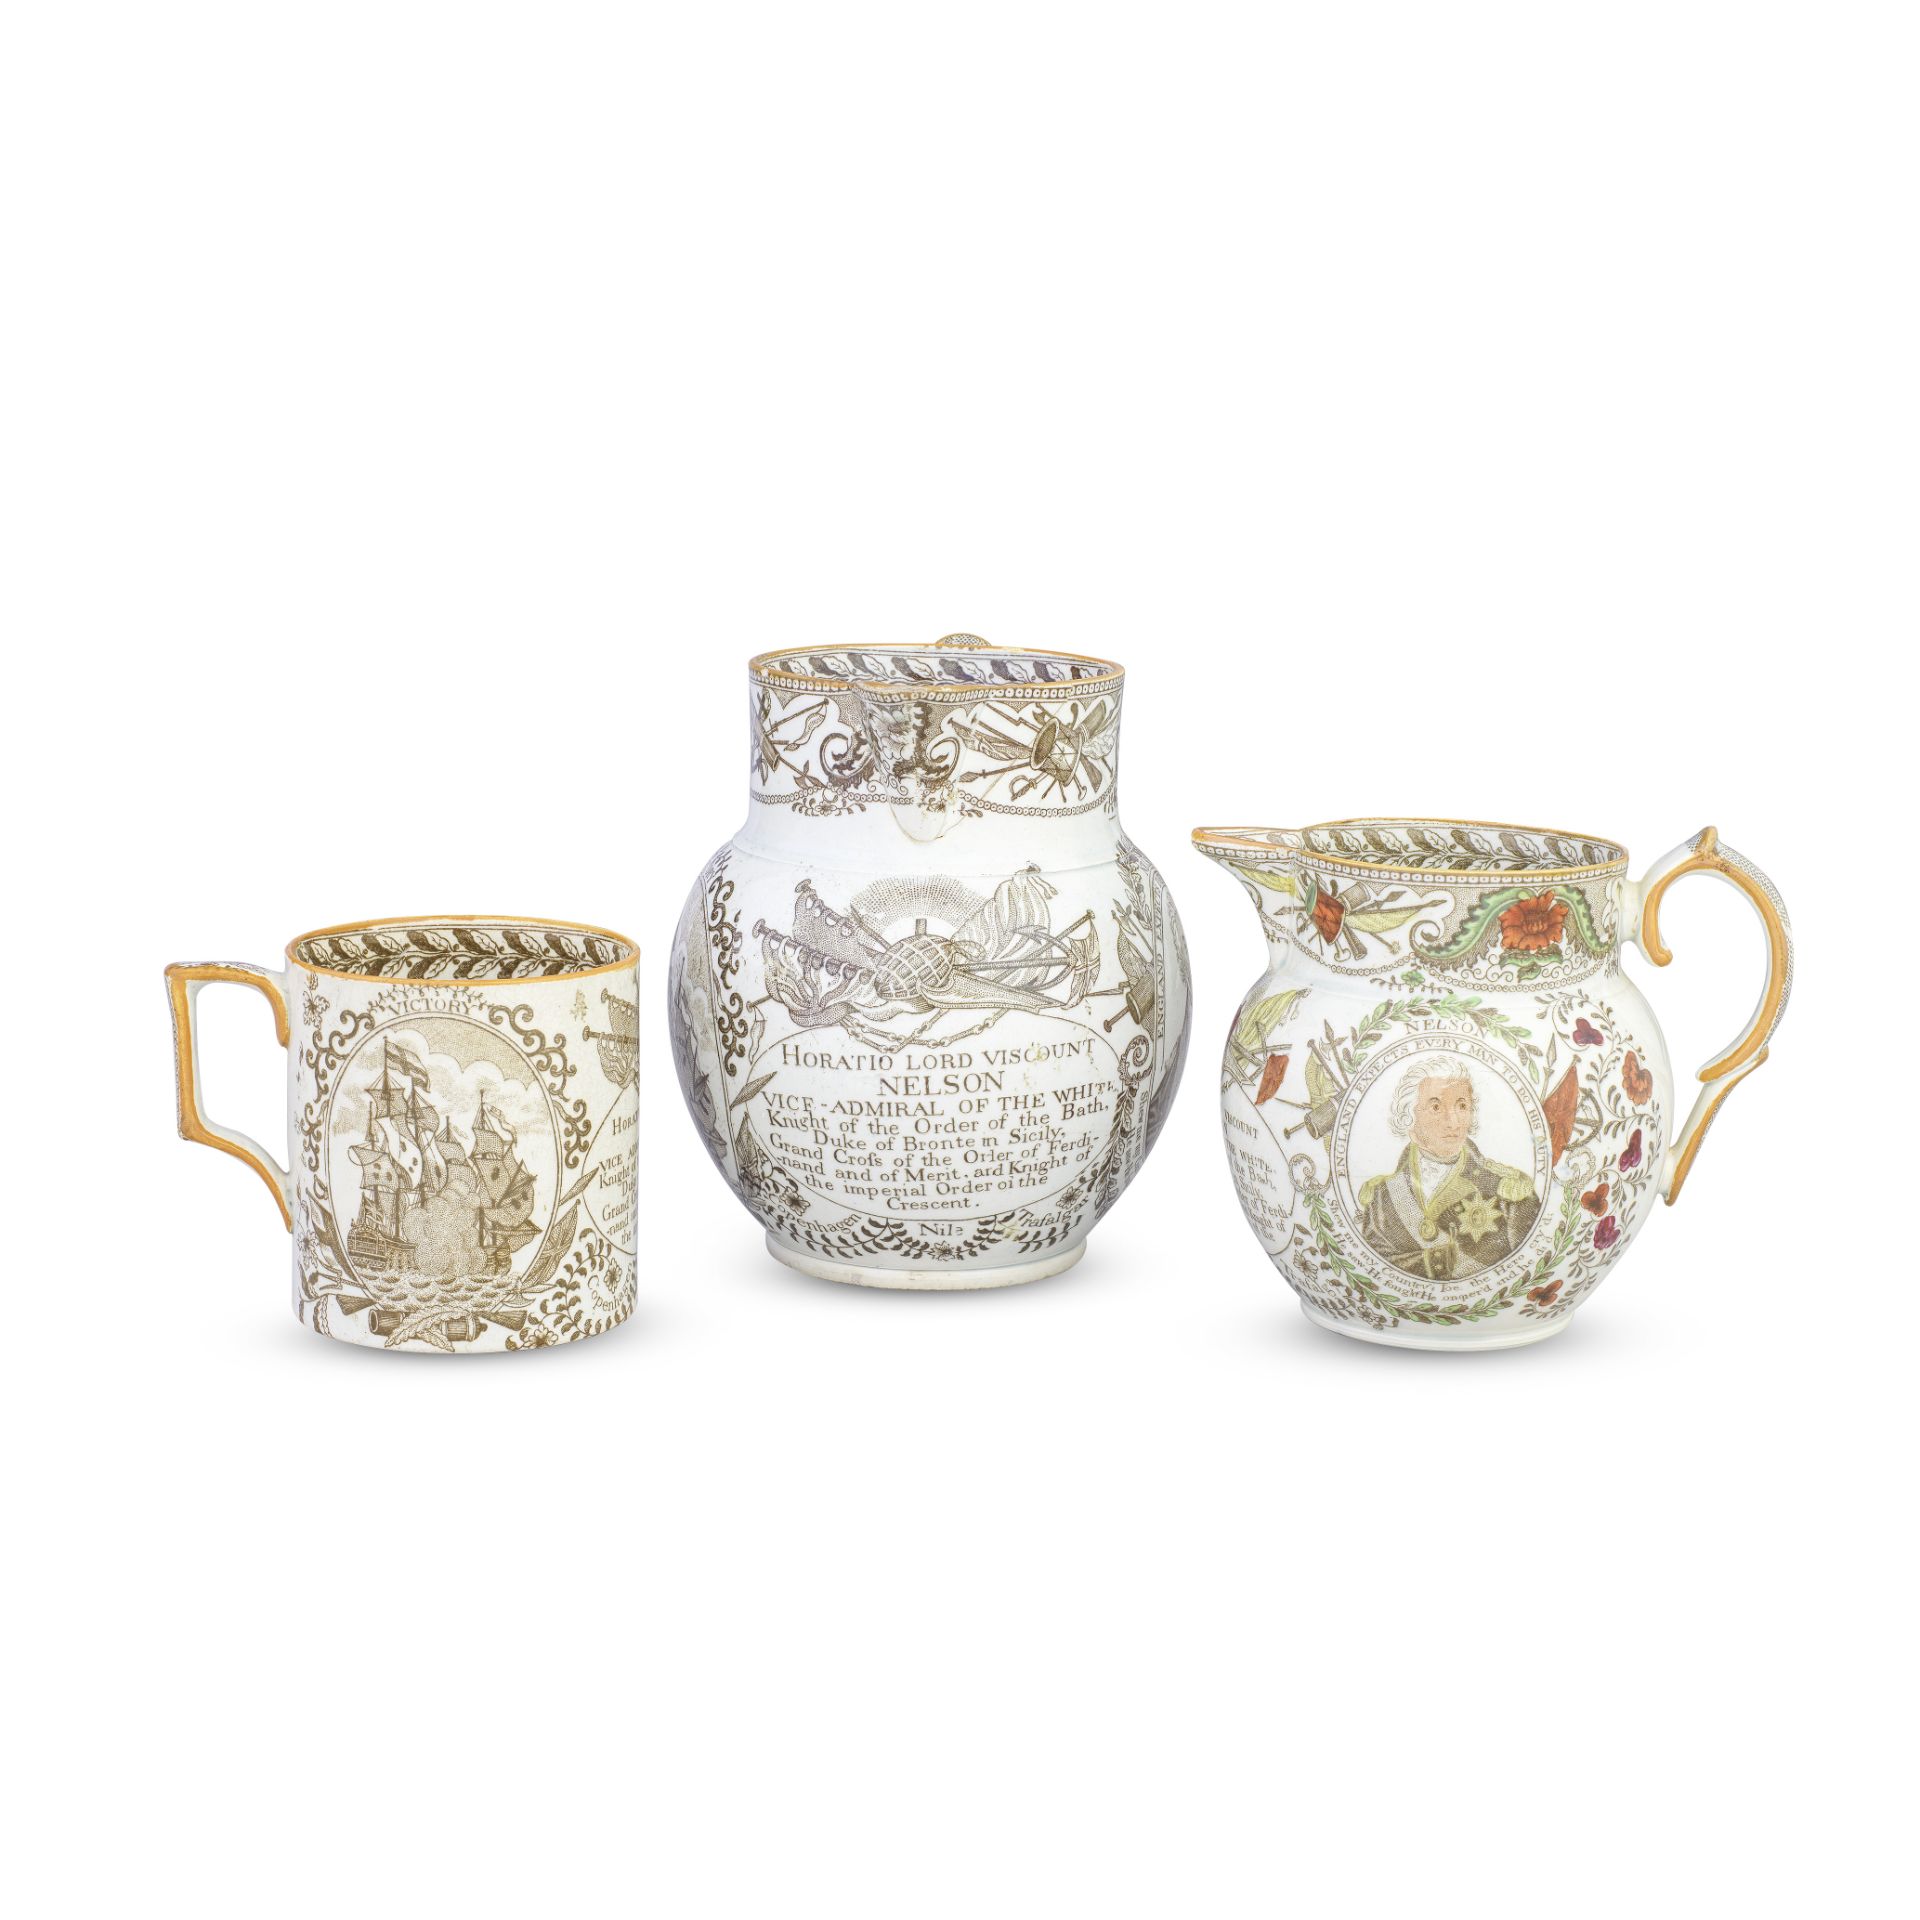 Two pearlware jugs and a mug, circa 1805-10